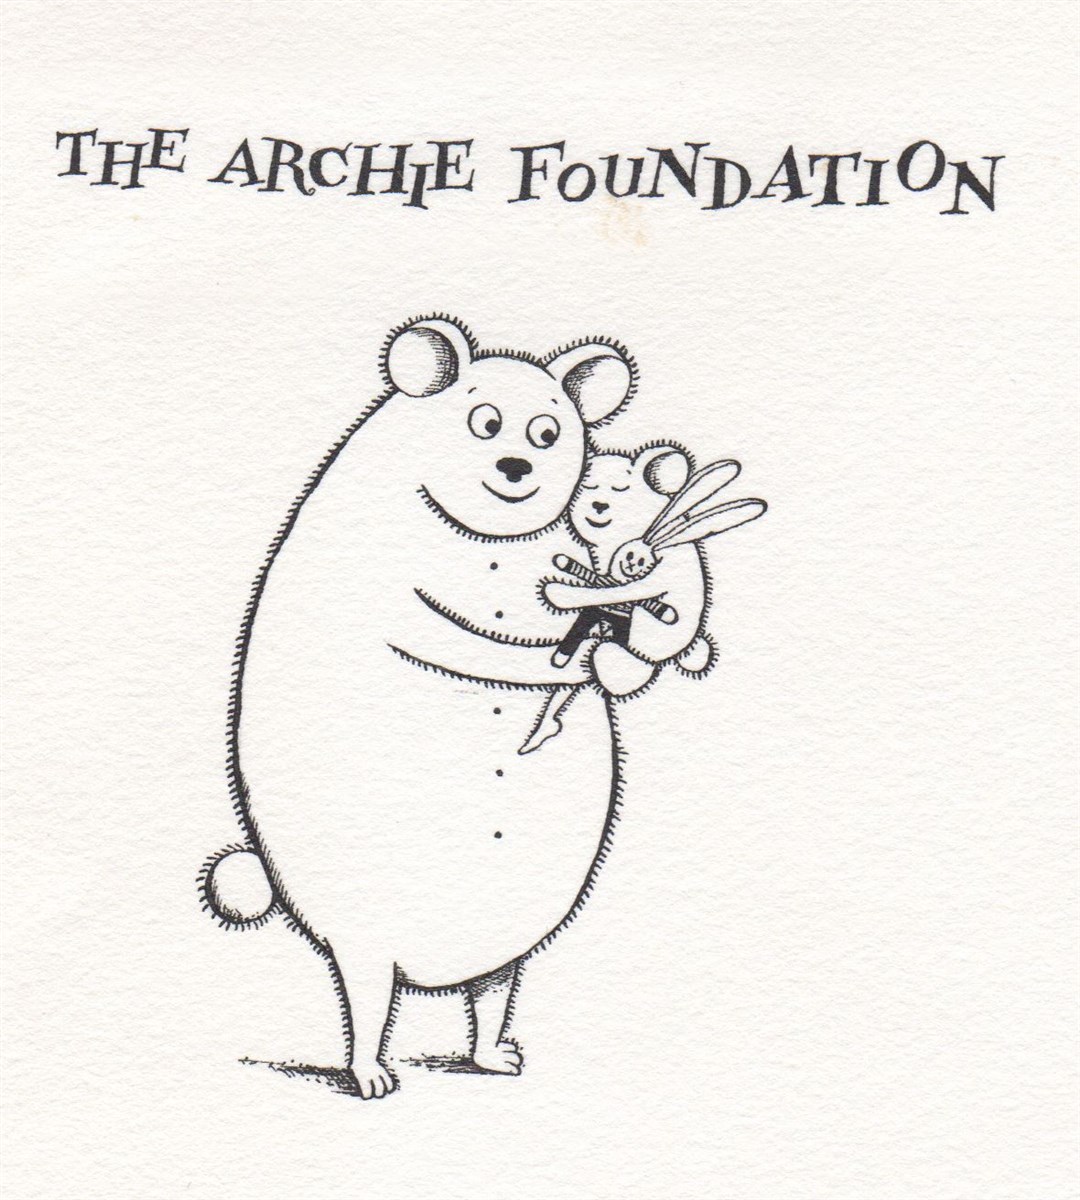 The original Archie bear.